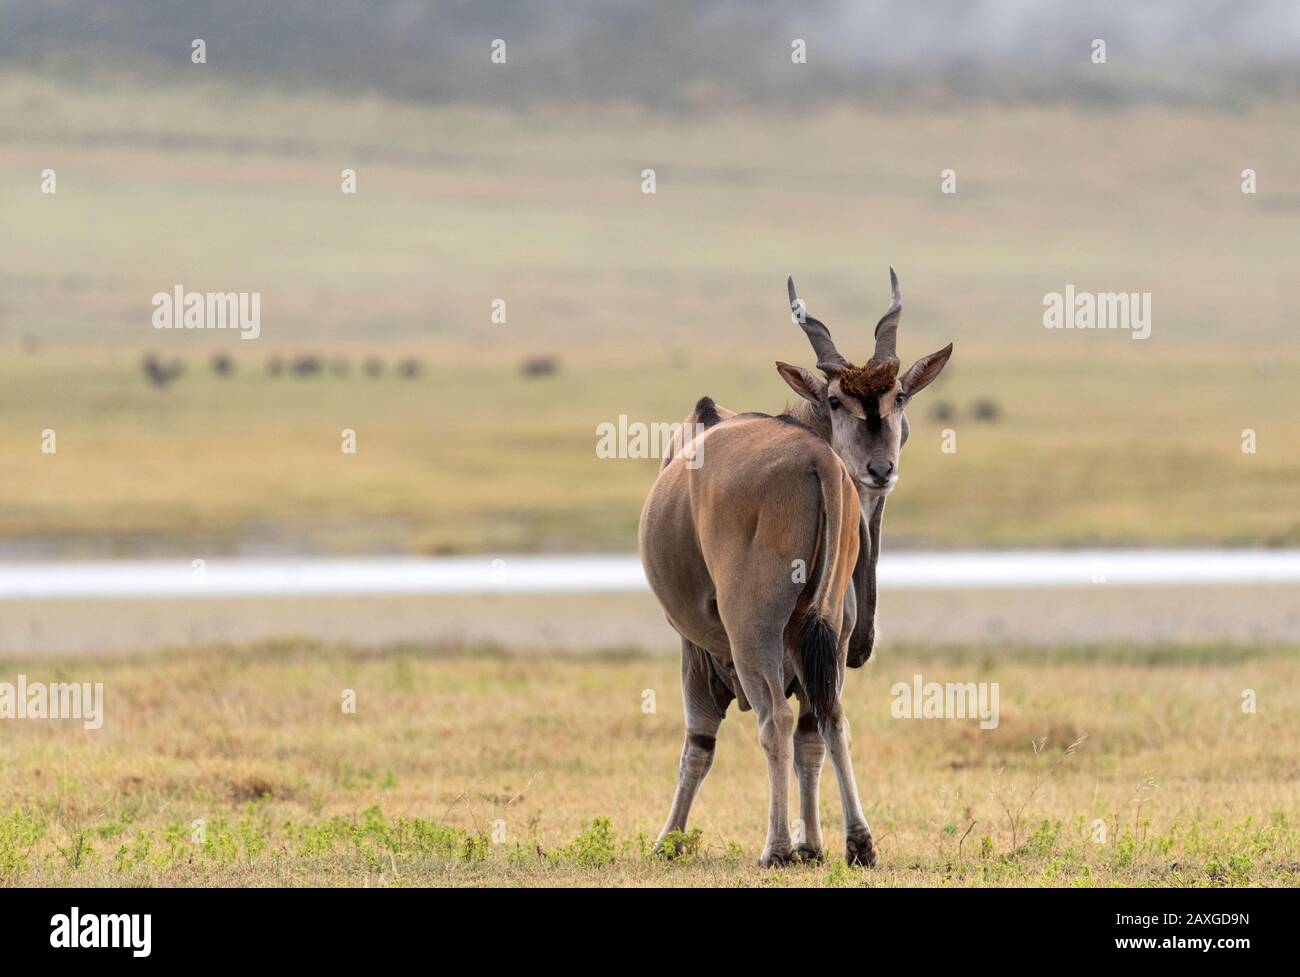 Die größte der afrikanischen Antilopen, die Eland, blickt zurück auf die Person, die sein Foto macht. Stockfoto